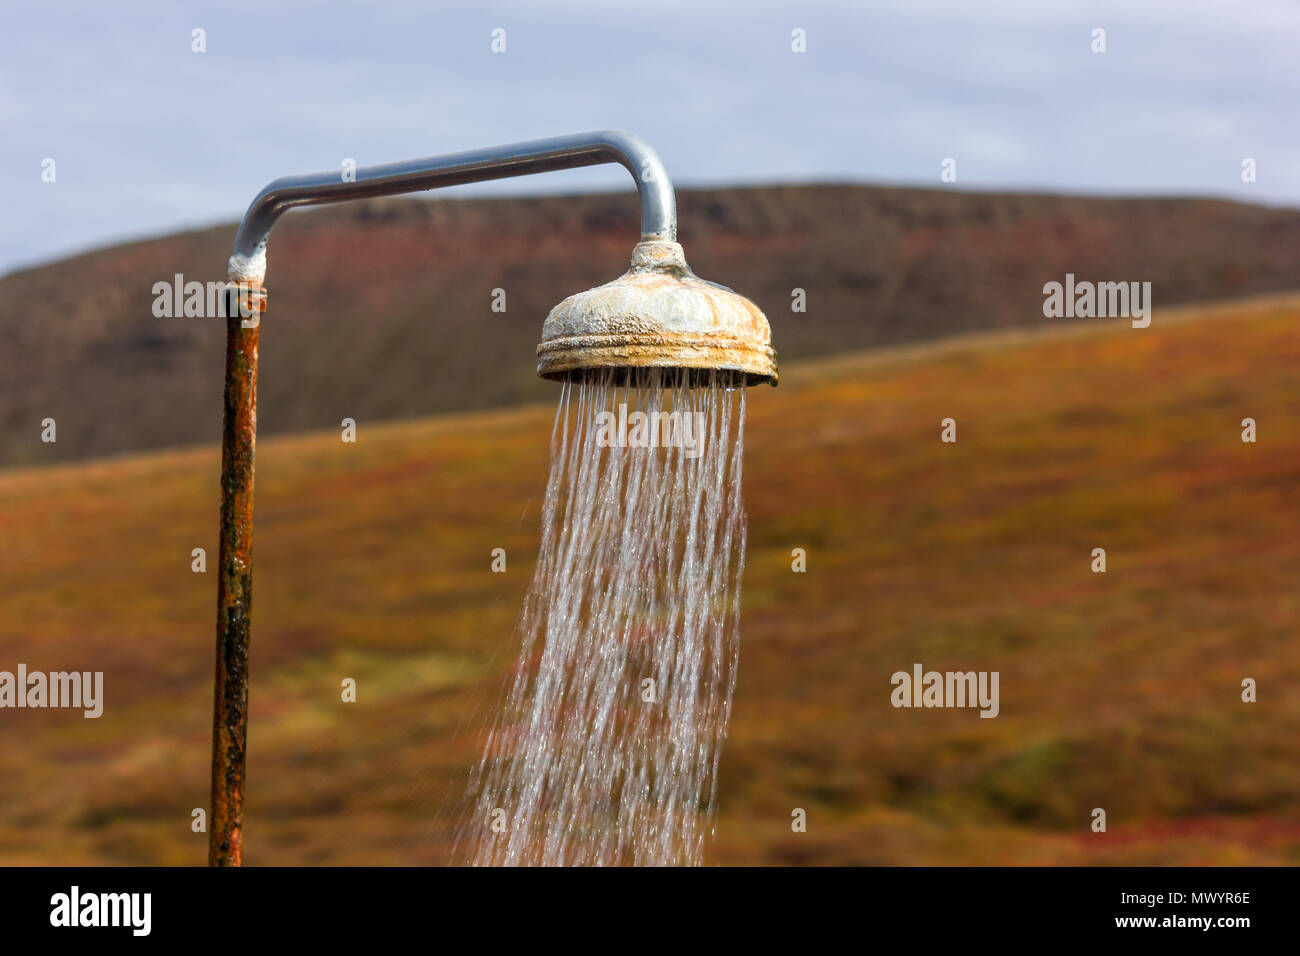 Outdoor geothermisch beheizte Dusche, Krafla, Island Stockfoto